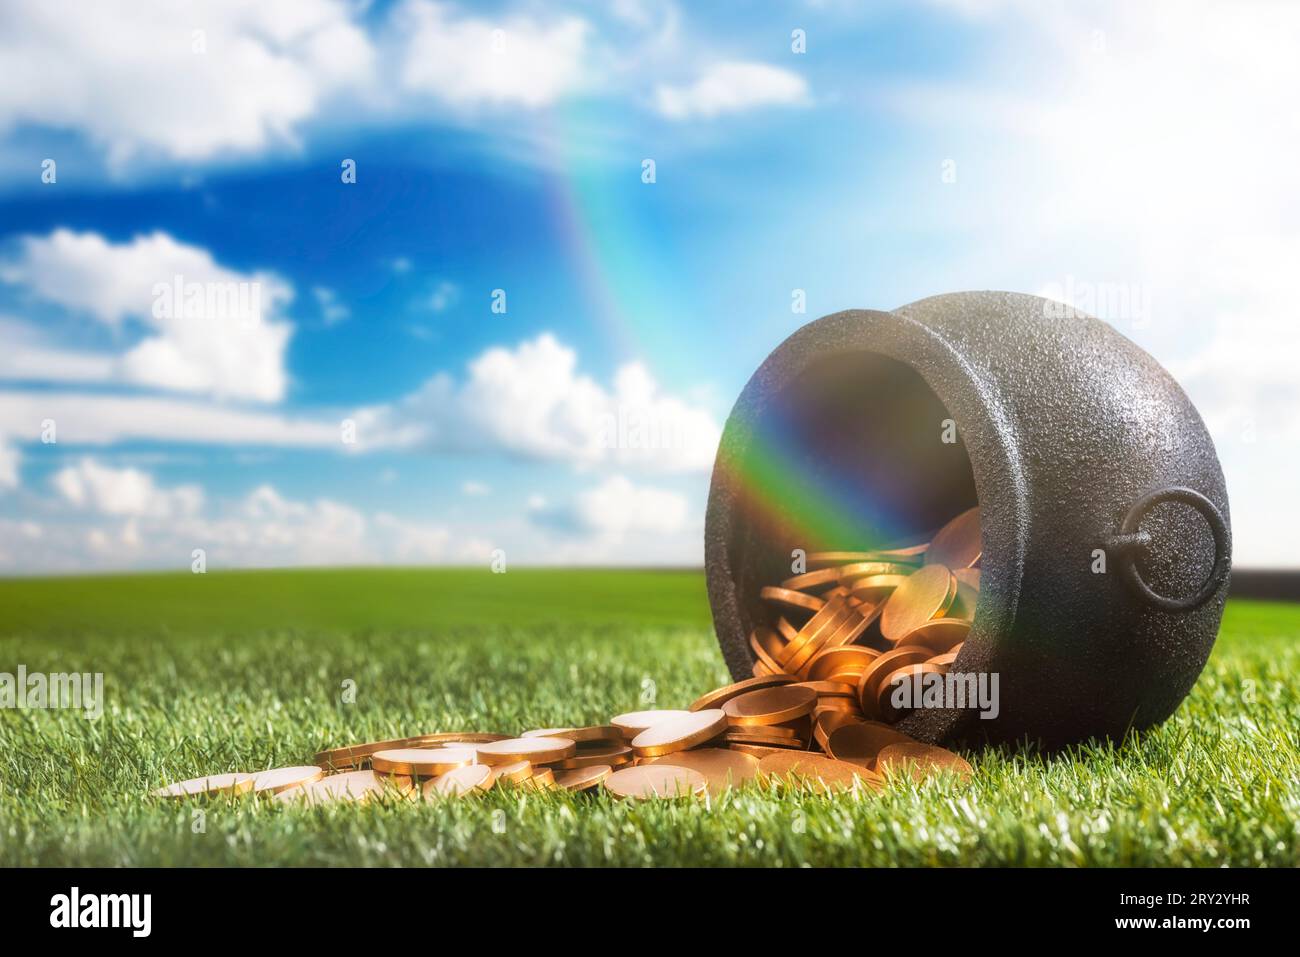 Angolo basso di un bollitore in ferro battuto nero che è stato rovesciato versando le sue monete d'oro sull'erba, con luce solare e arcobaleno. Foto Stock